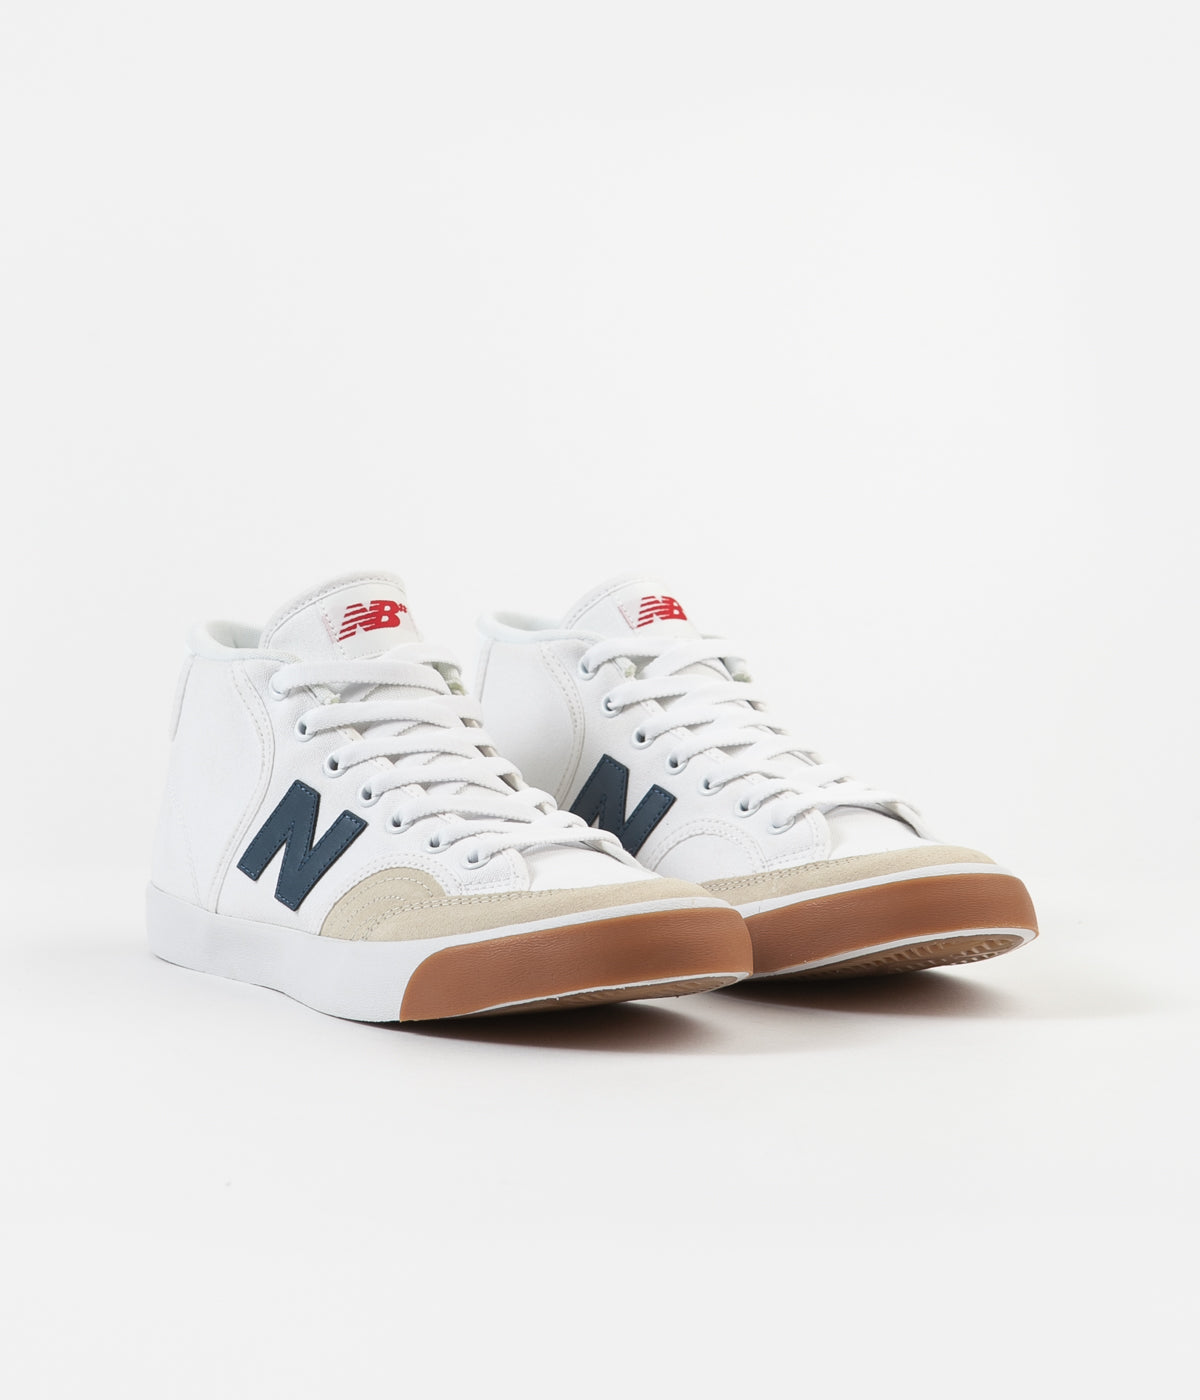 New Balance Numeric 213 Shoes - White 